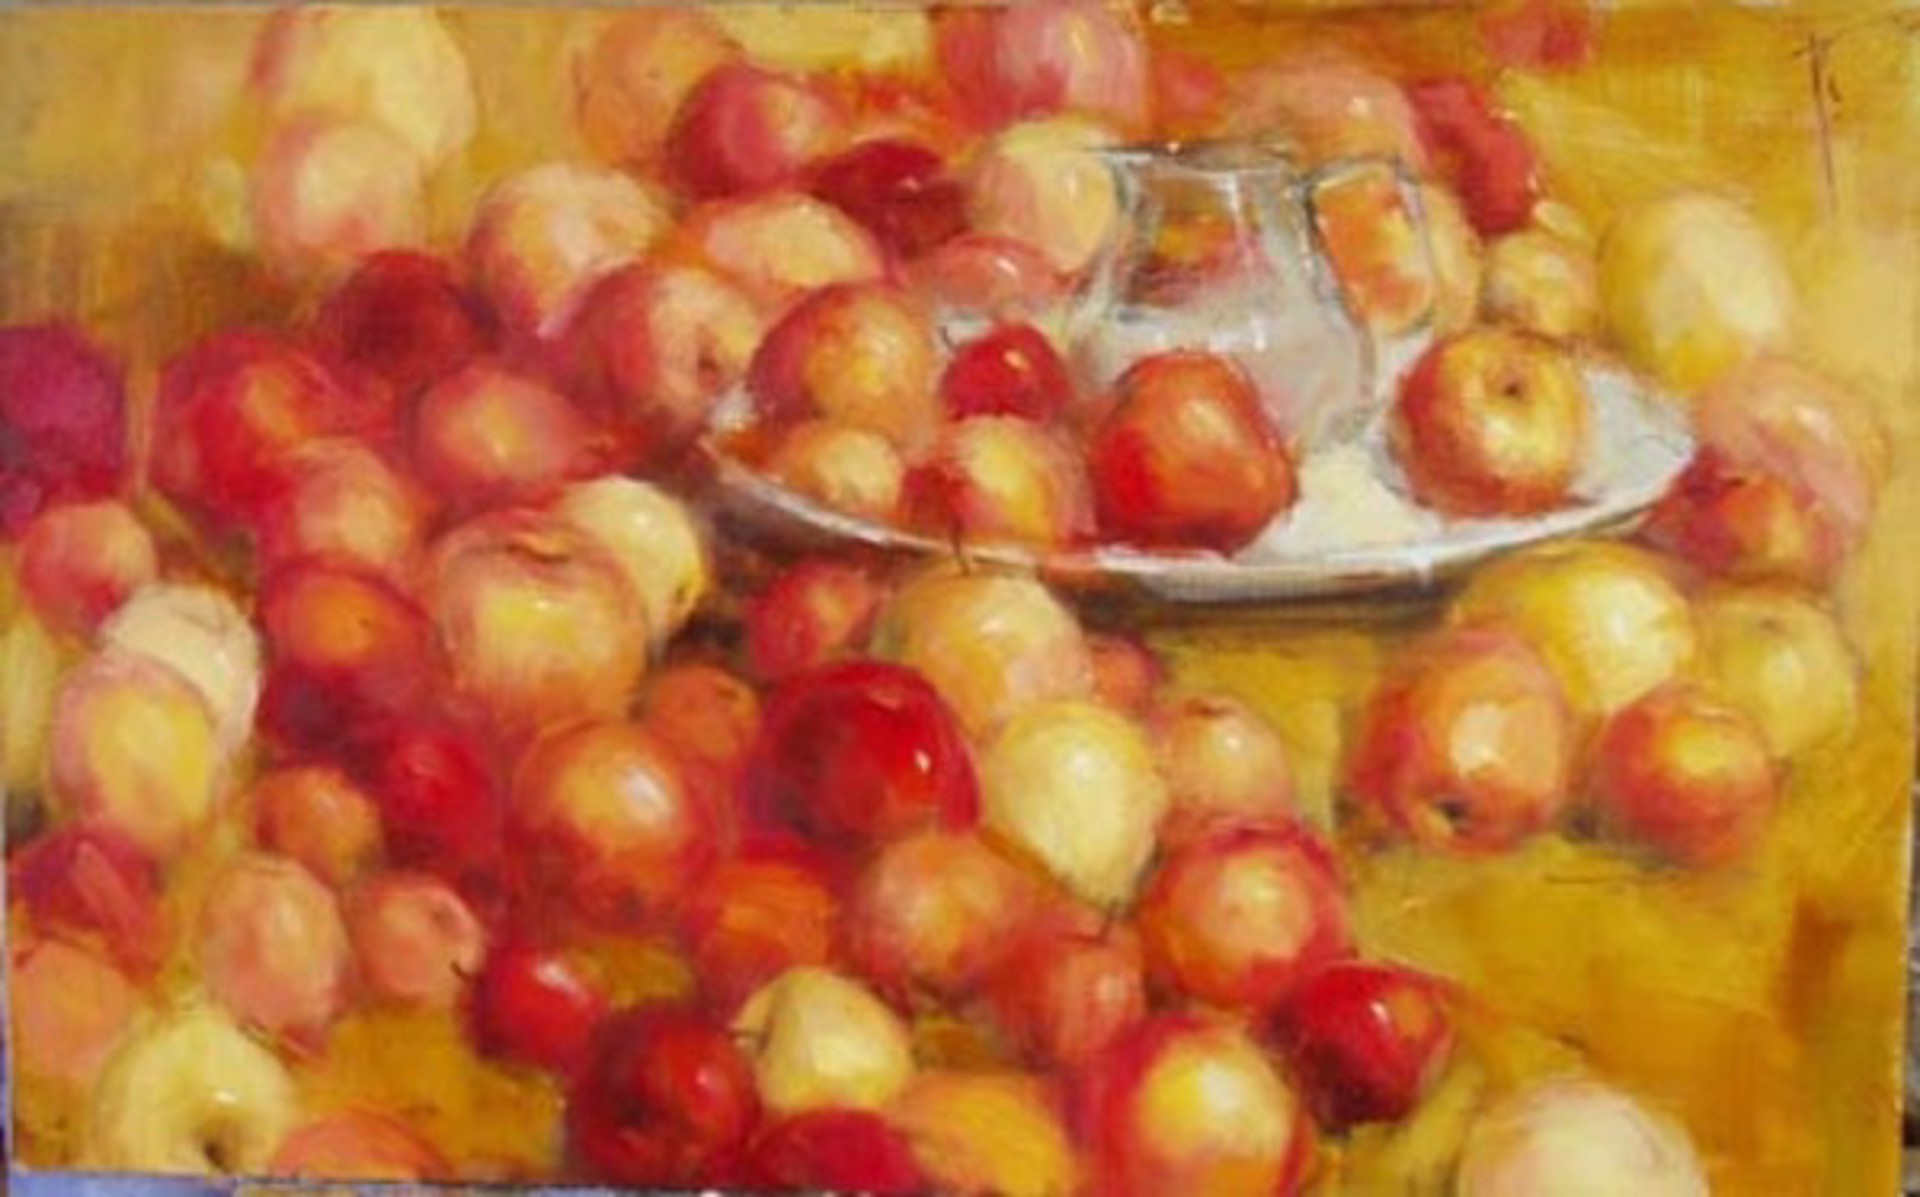 Apples by Yana Golubyatnikova